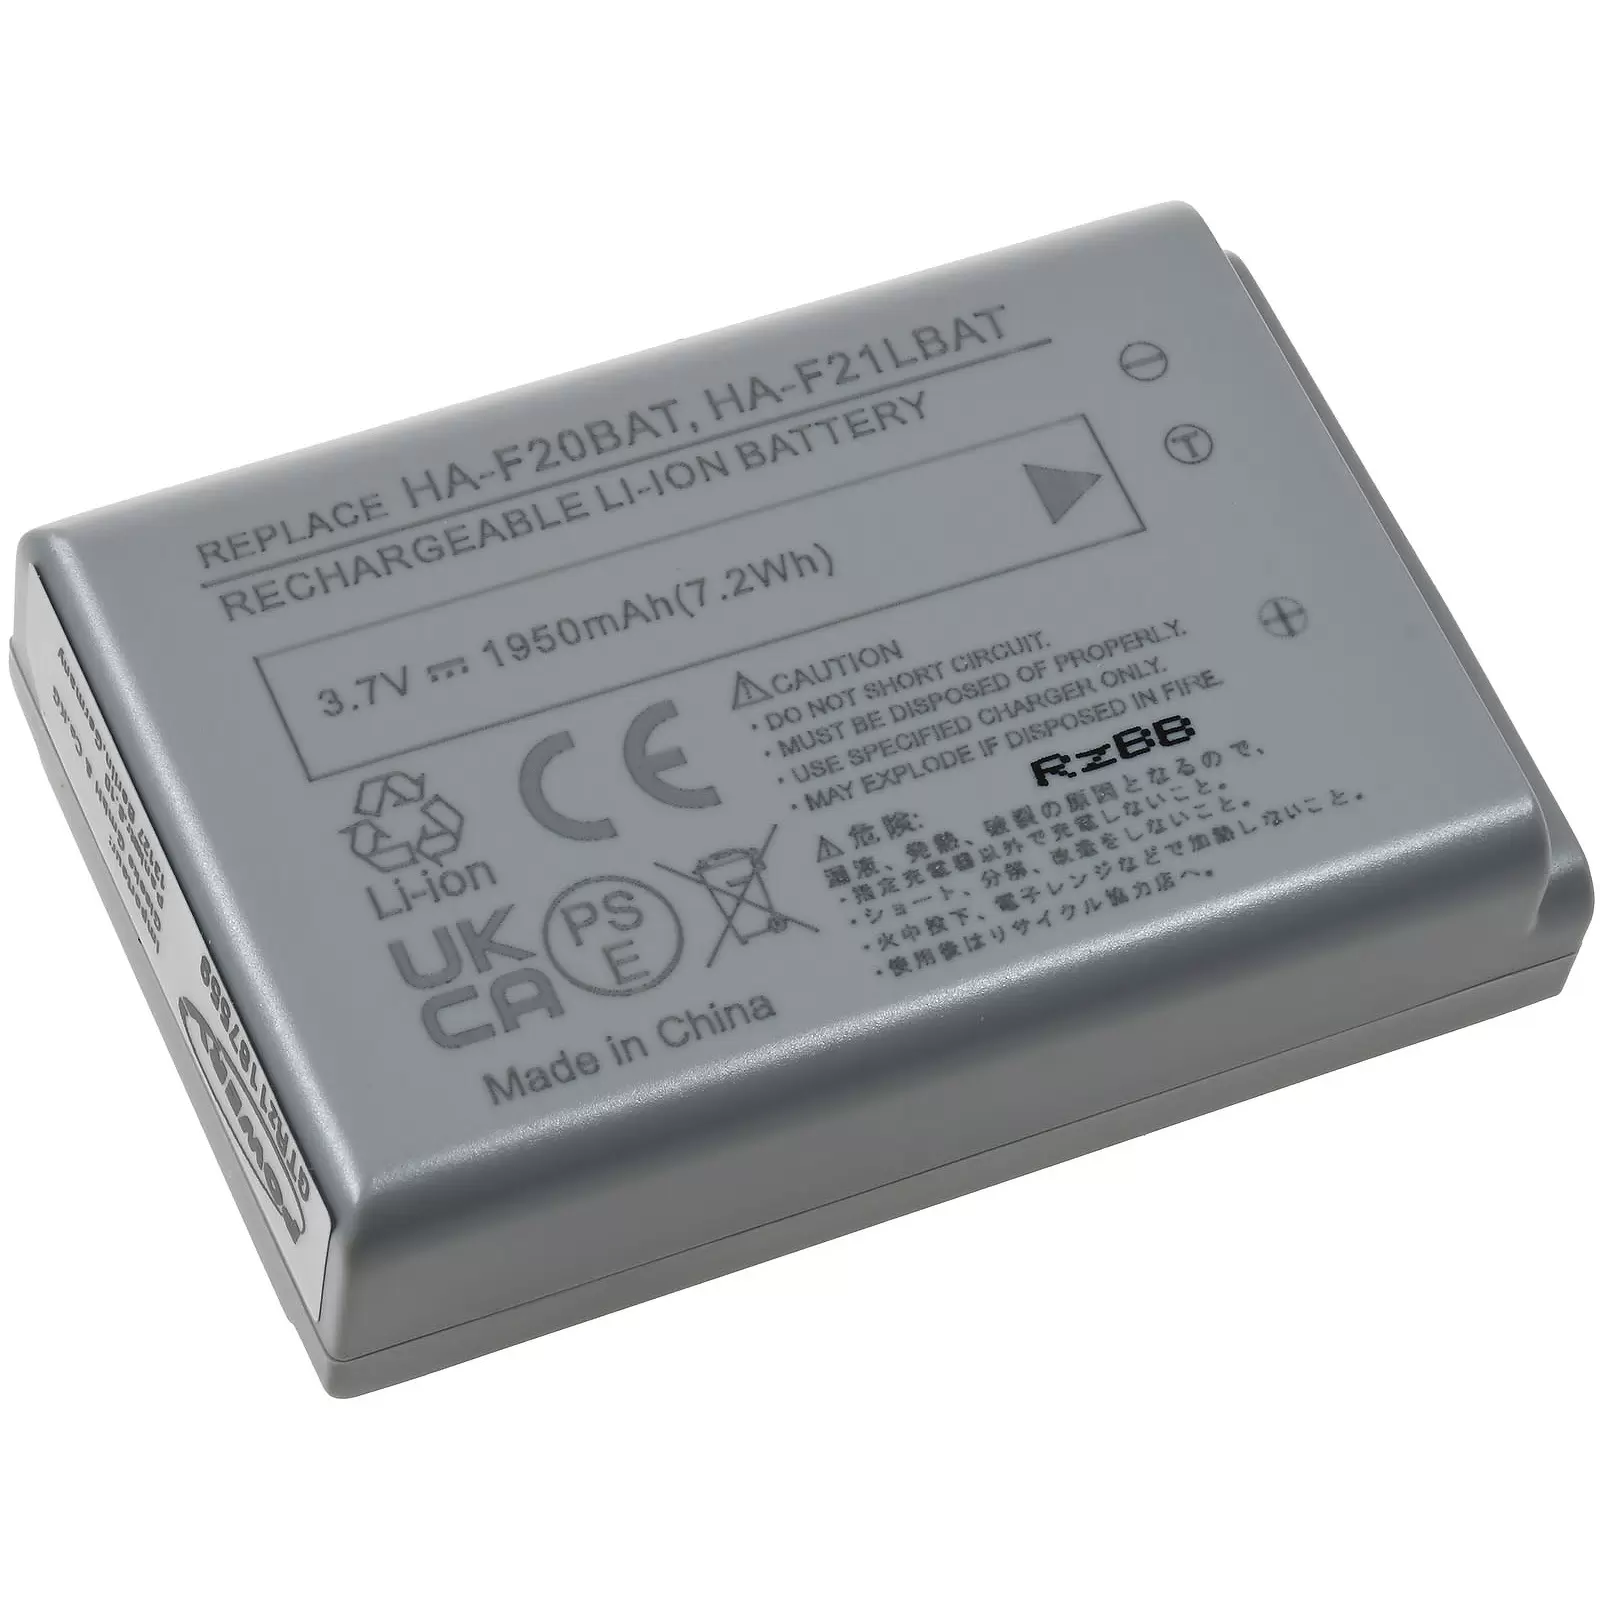 Powerakku passend für Barcode-Scanner Casio DT-X7, Typ HA-F20BAT u.a.